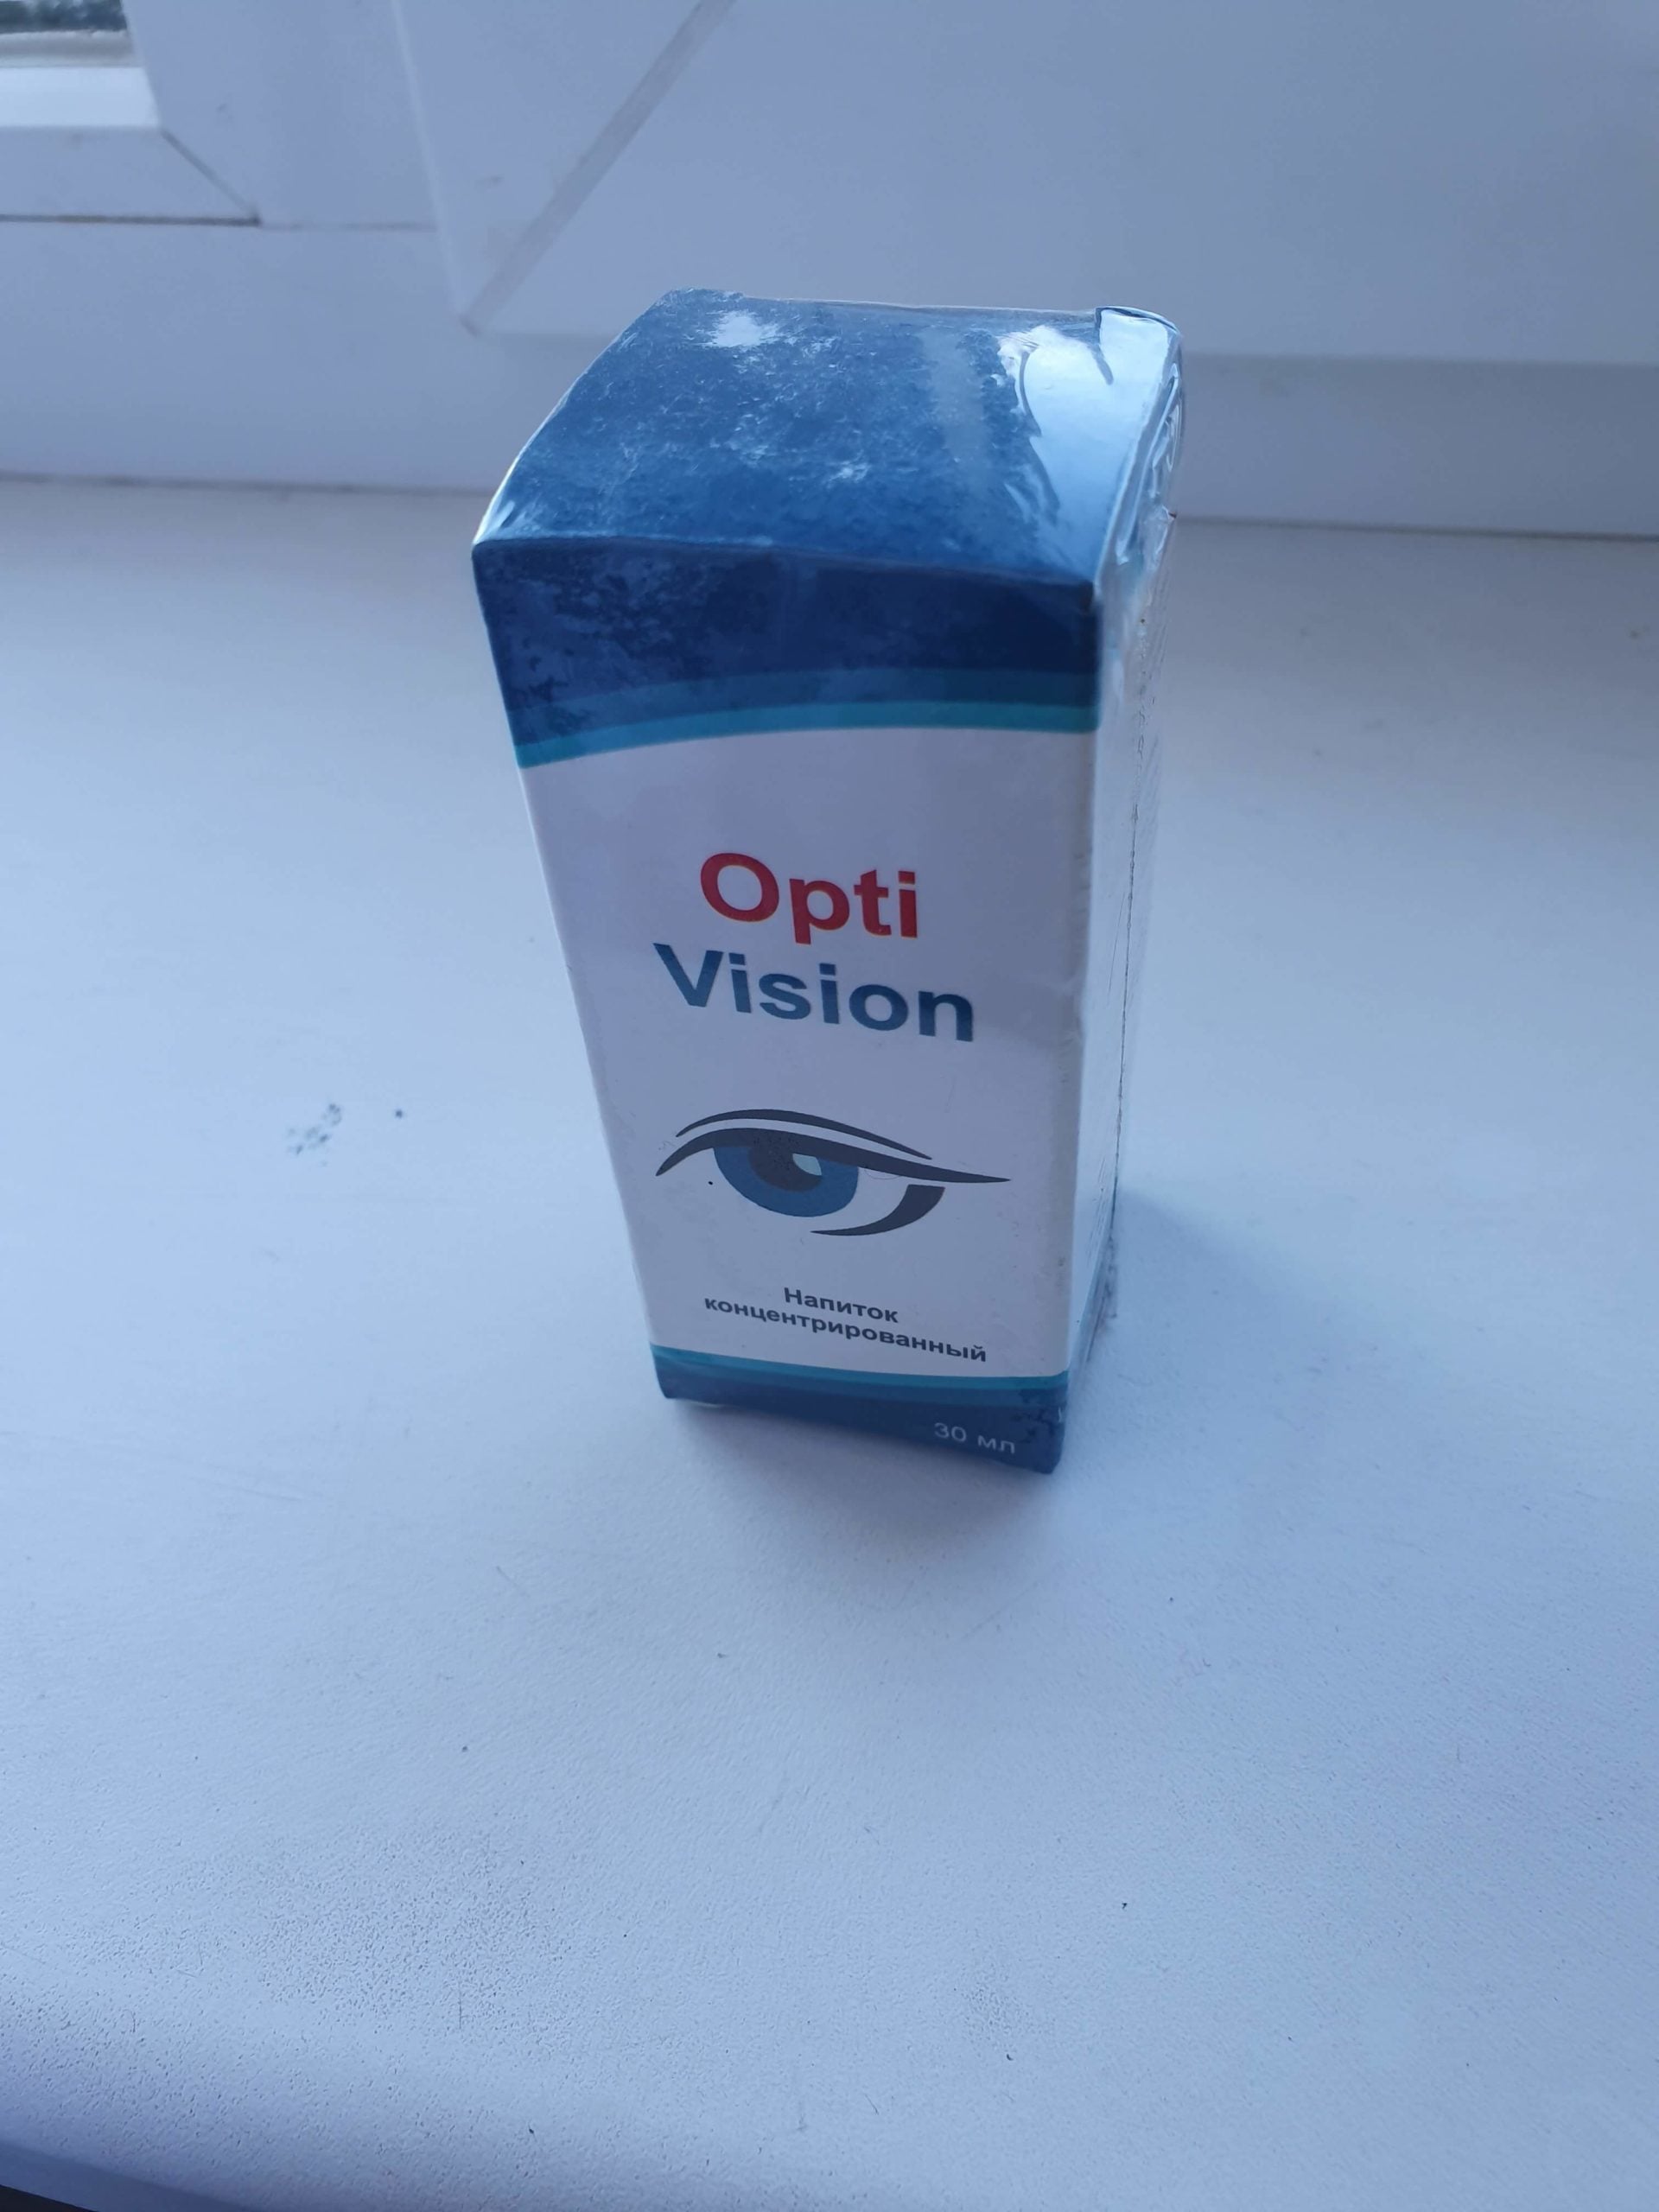 ActiVision e optivision restaurar a visão e tratar doenças oculares